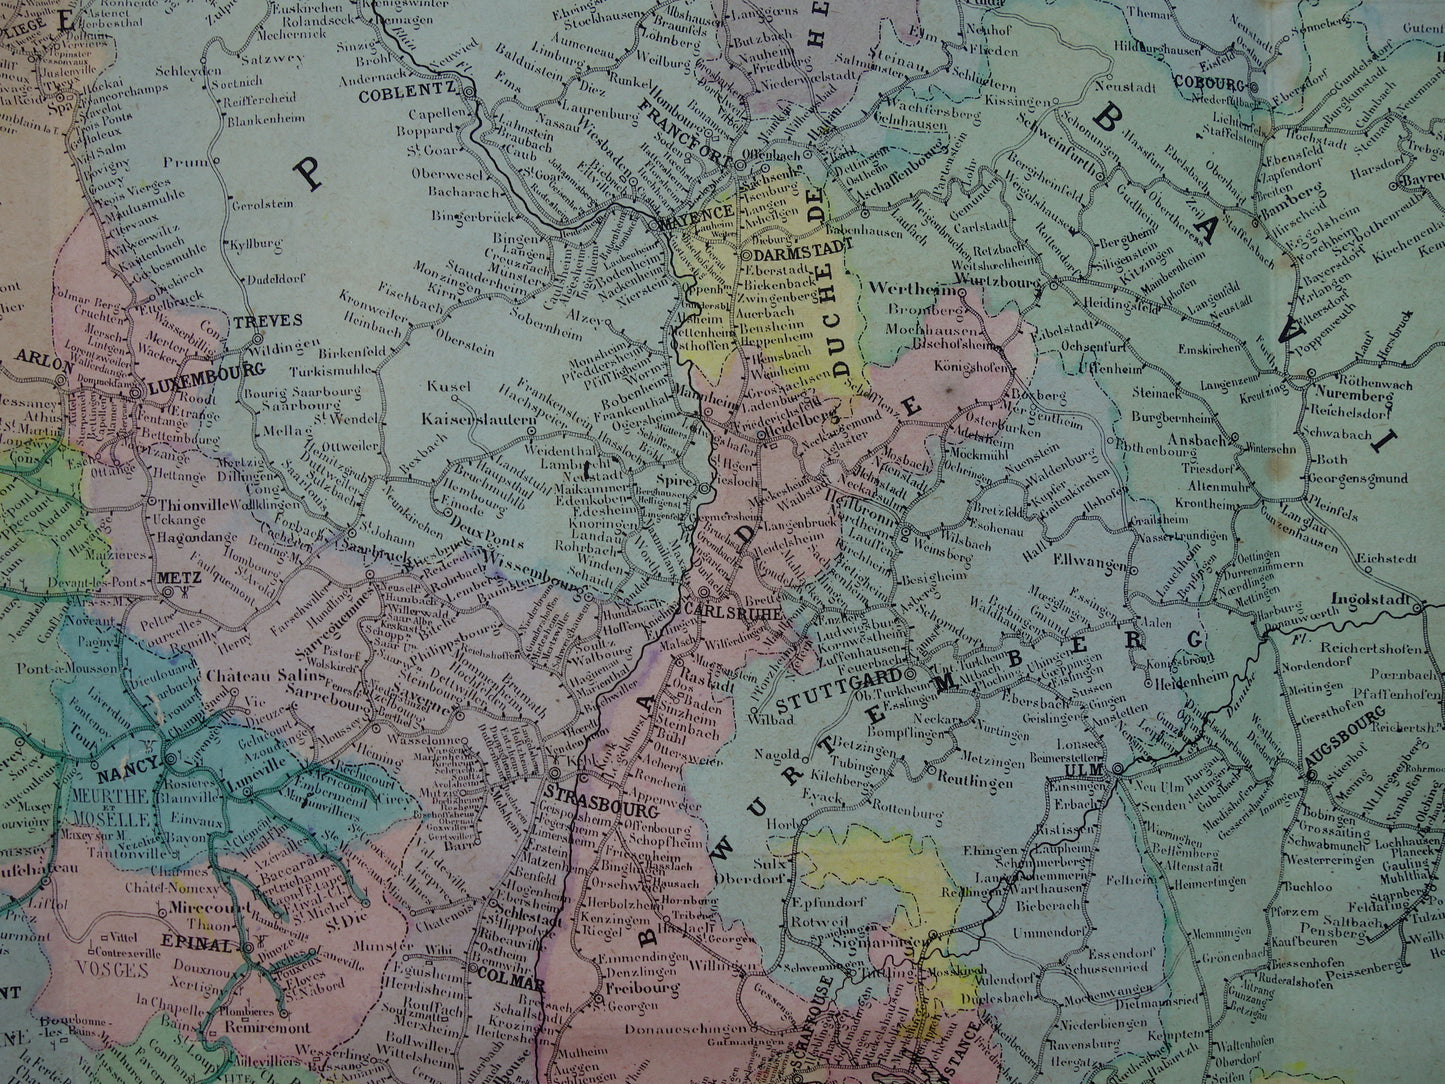 Grote oude kaart van Spoorwegen in Europa BESCHADIGD 1875 originele antieke oude landkaart spoorlijnen centraal Europa spoorkaart